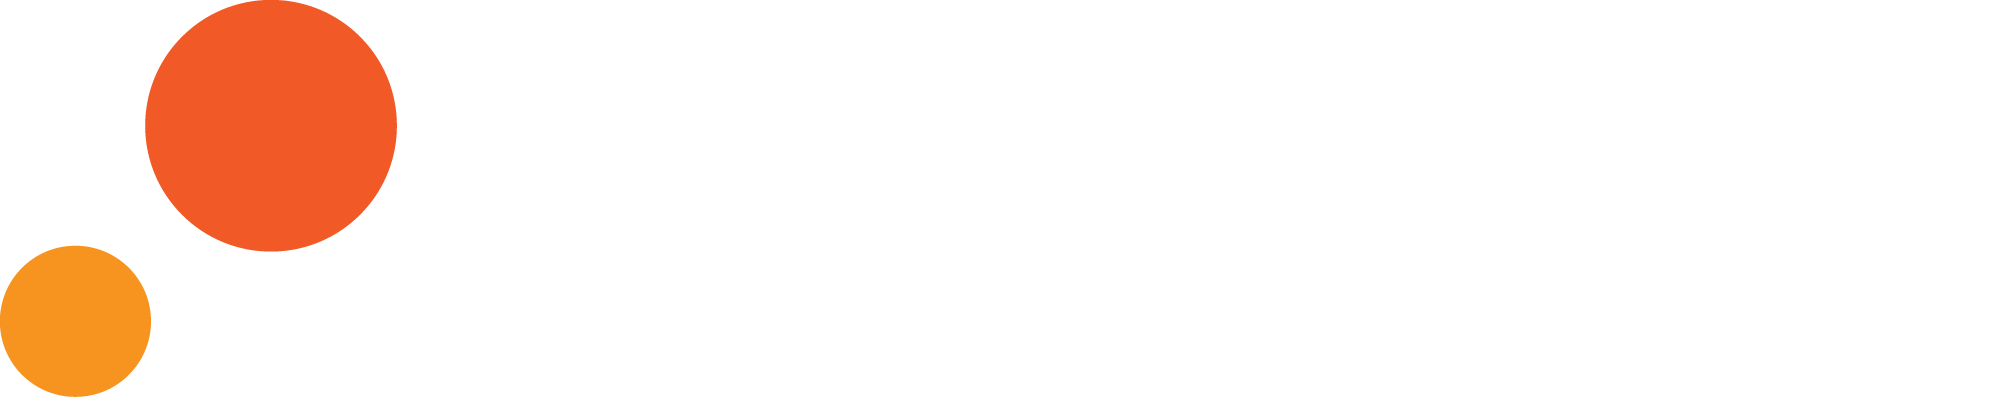 Dosen logo